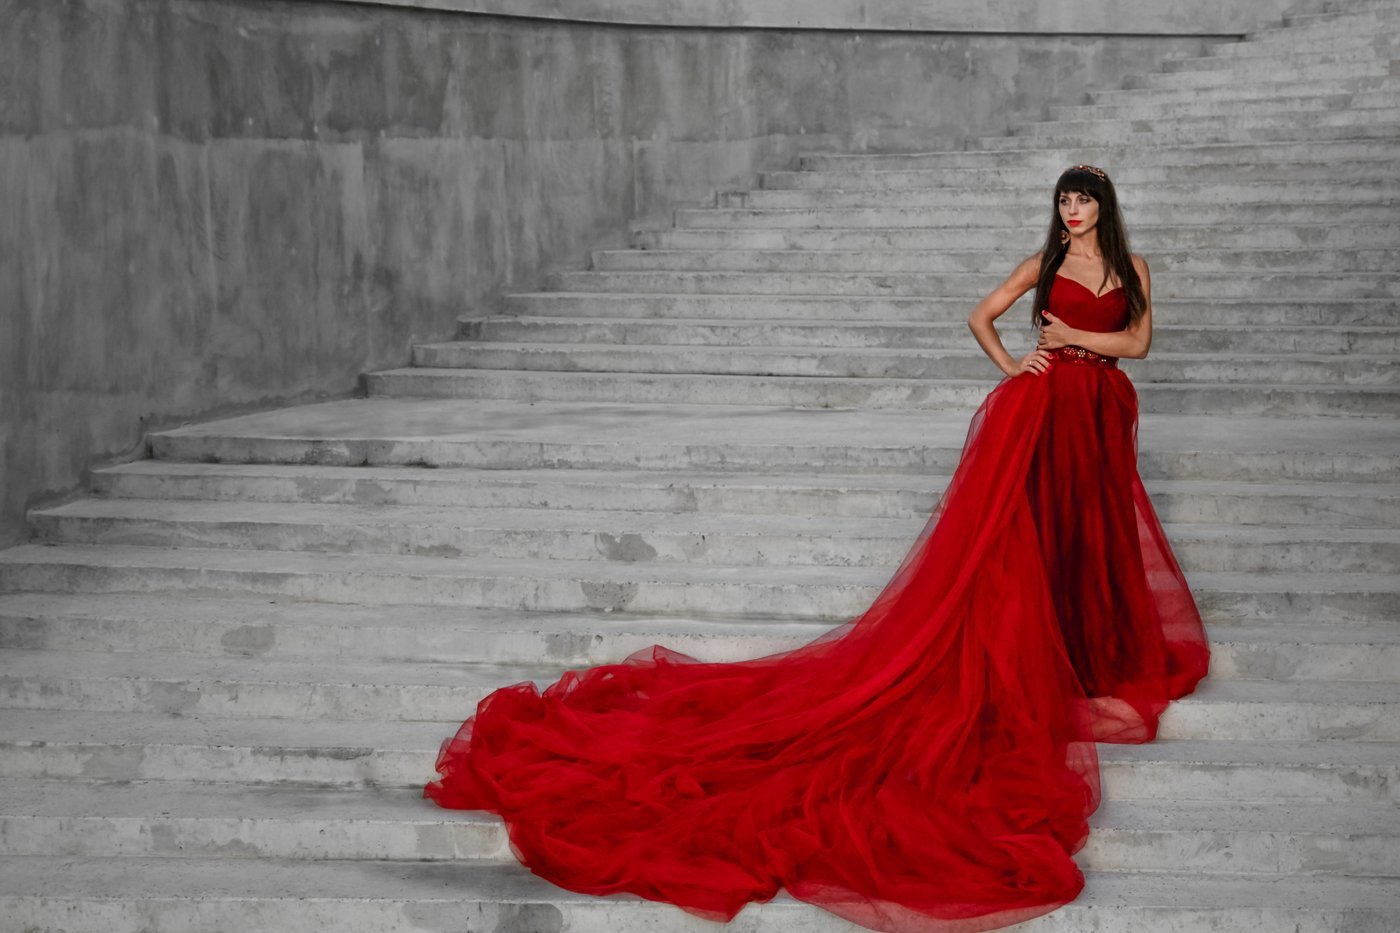 Сессия в красном платье